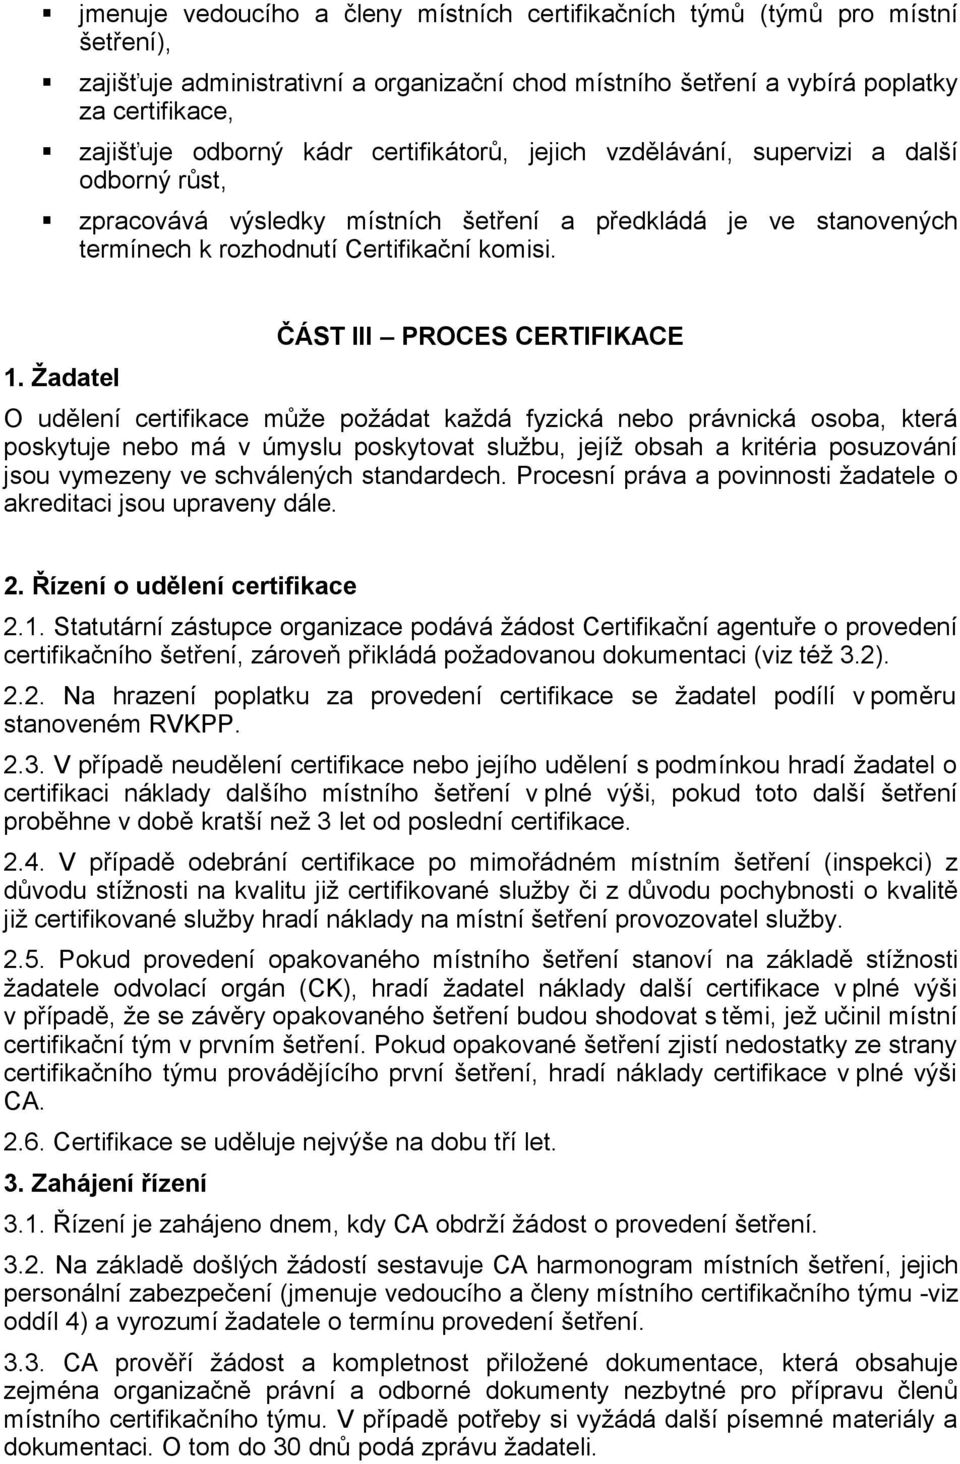 Žadatel ČÁST III PROCES CERTIFIKACE O udělení certifikace může požádat každá fyzická nebo právnická osoba, která poskytuje nebo má v úmyslu poskytovat službu, jejíž obsah a kritéria posuzování jsou